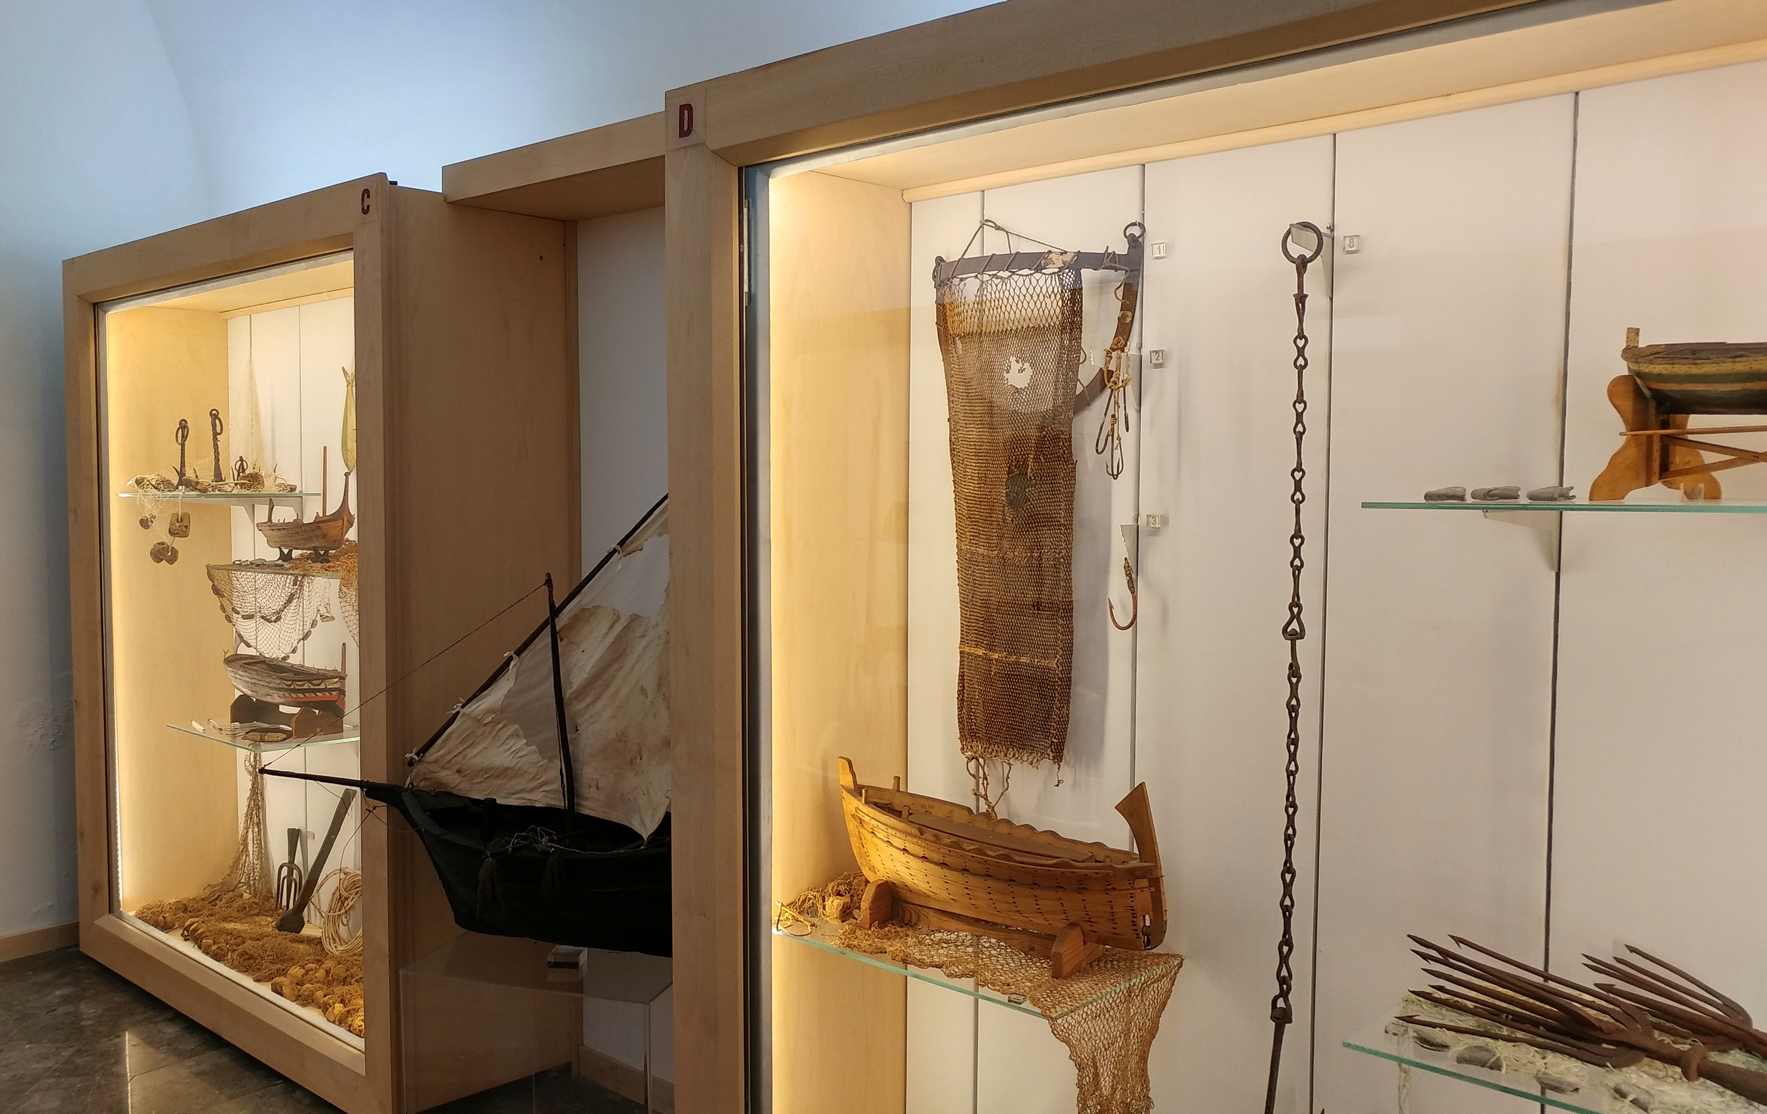 Museo etnográfico siciliano Giuseppe Pitrè - el oficio de la pesca